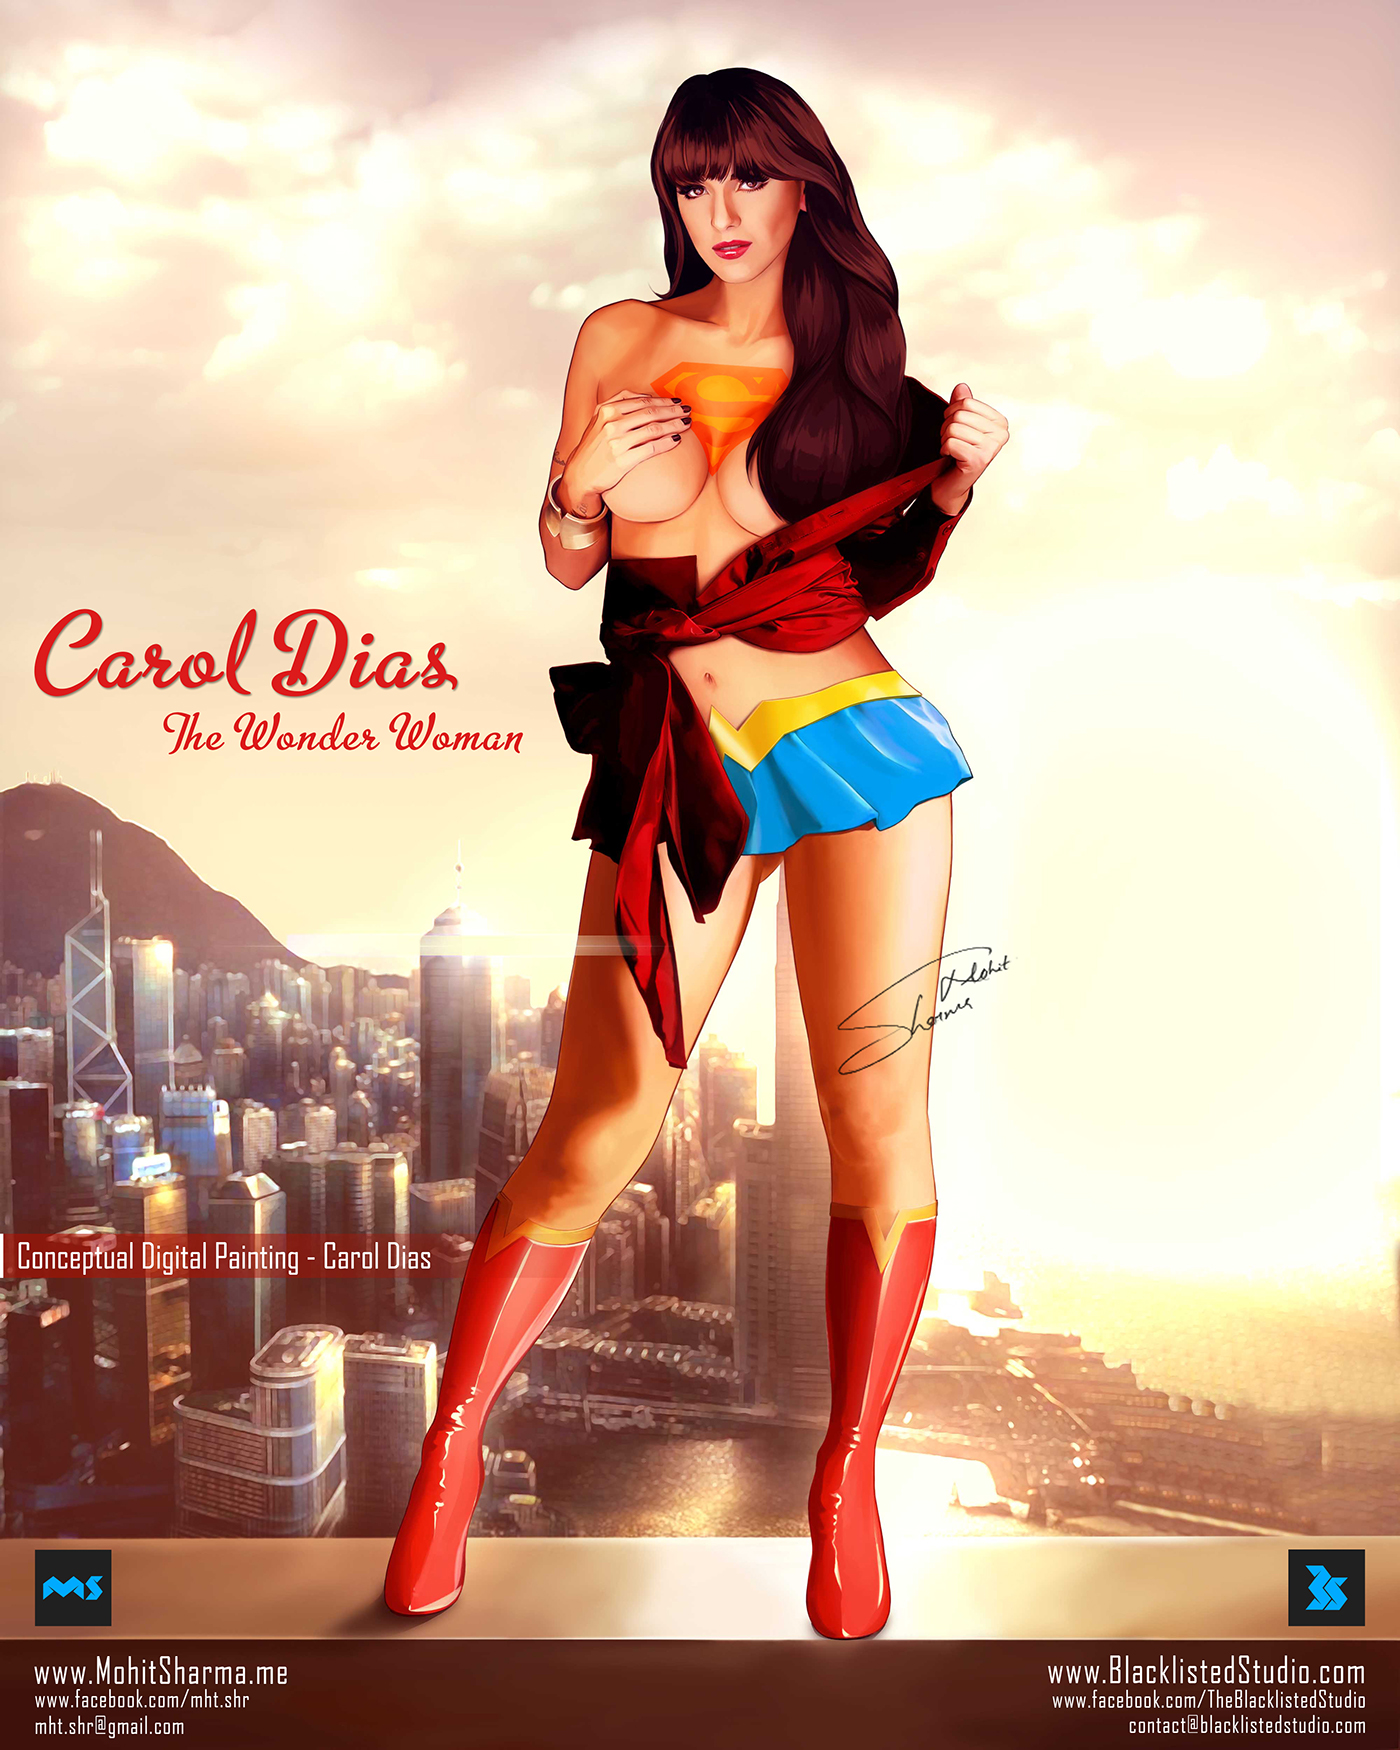 Carol dias